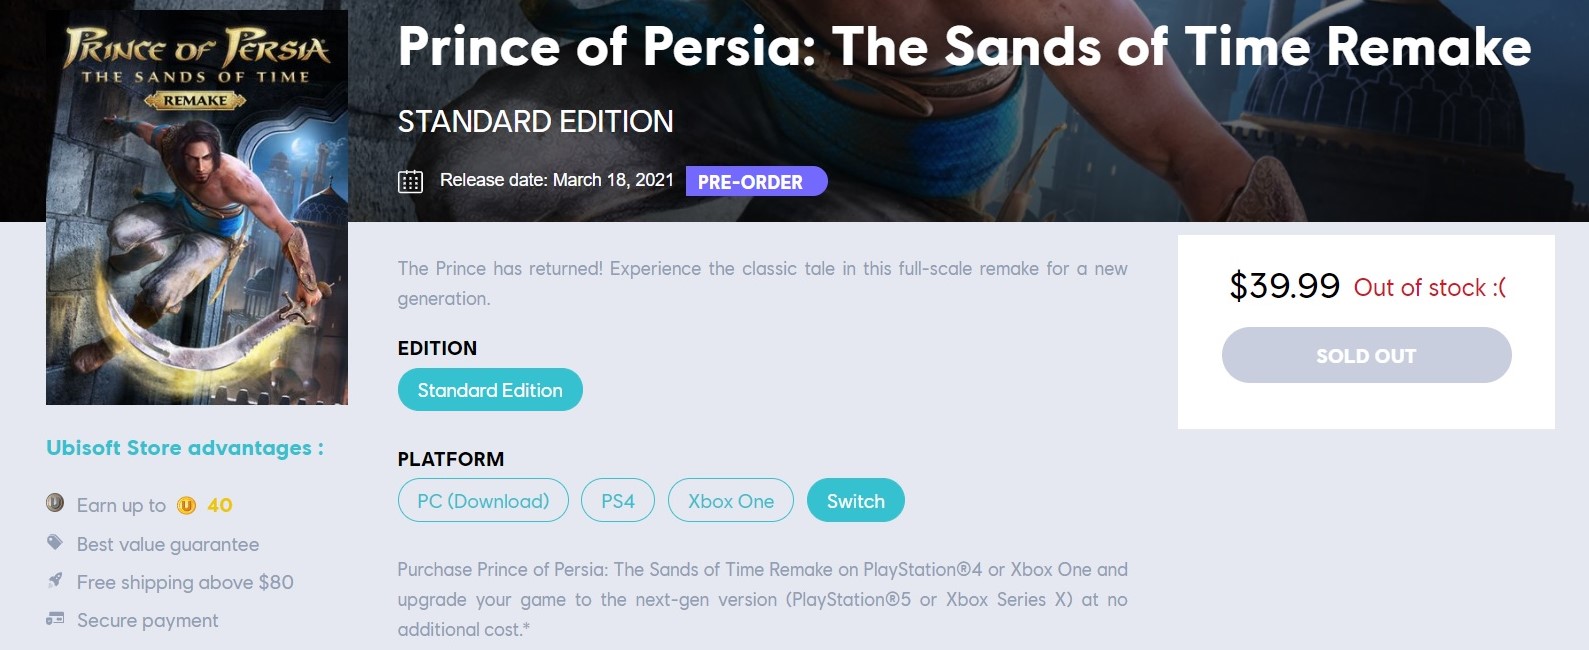 صورة متجر يوبي سوفت الرقمي يعود لرصد نسخة السويتش من لعبة Prince of Persia: The Sands of Time Remake